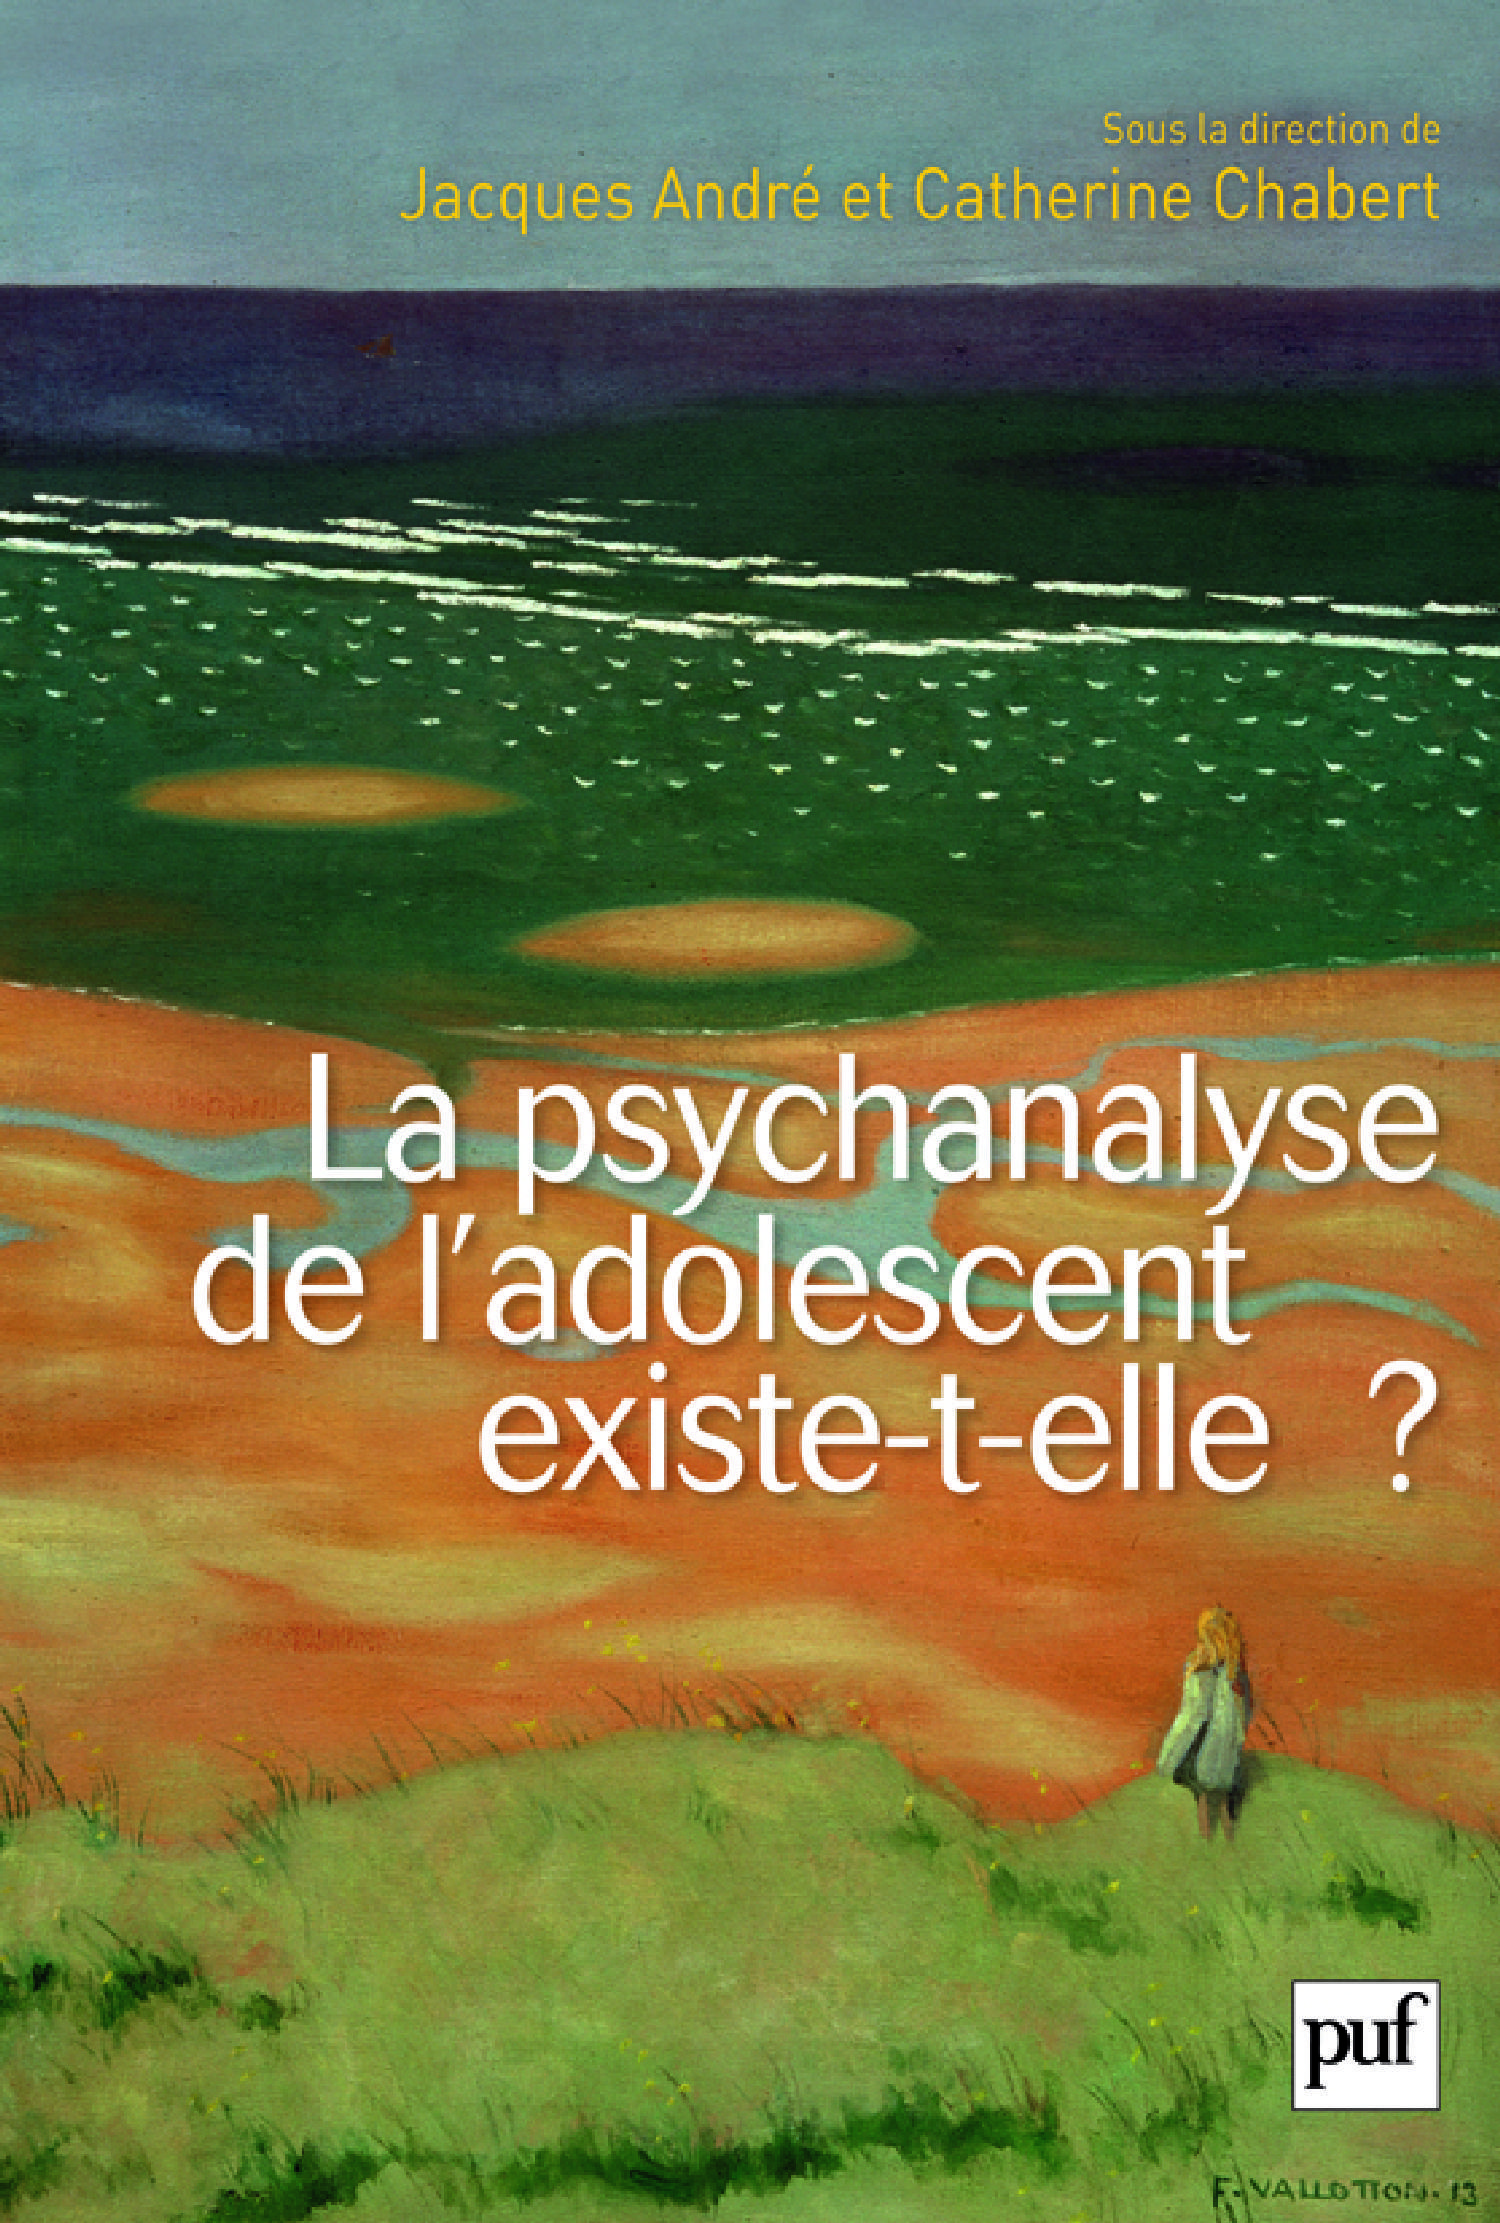 La psychanalyse de l'adolescent existe-t-elle ? De Jacques André et Catherine Chabert - Presses Universitaires de France